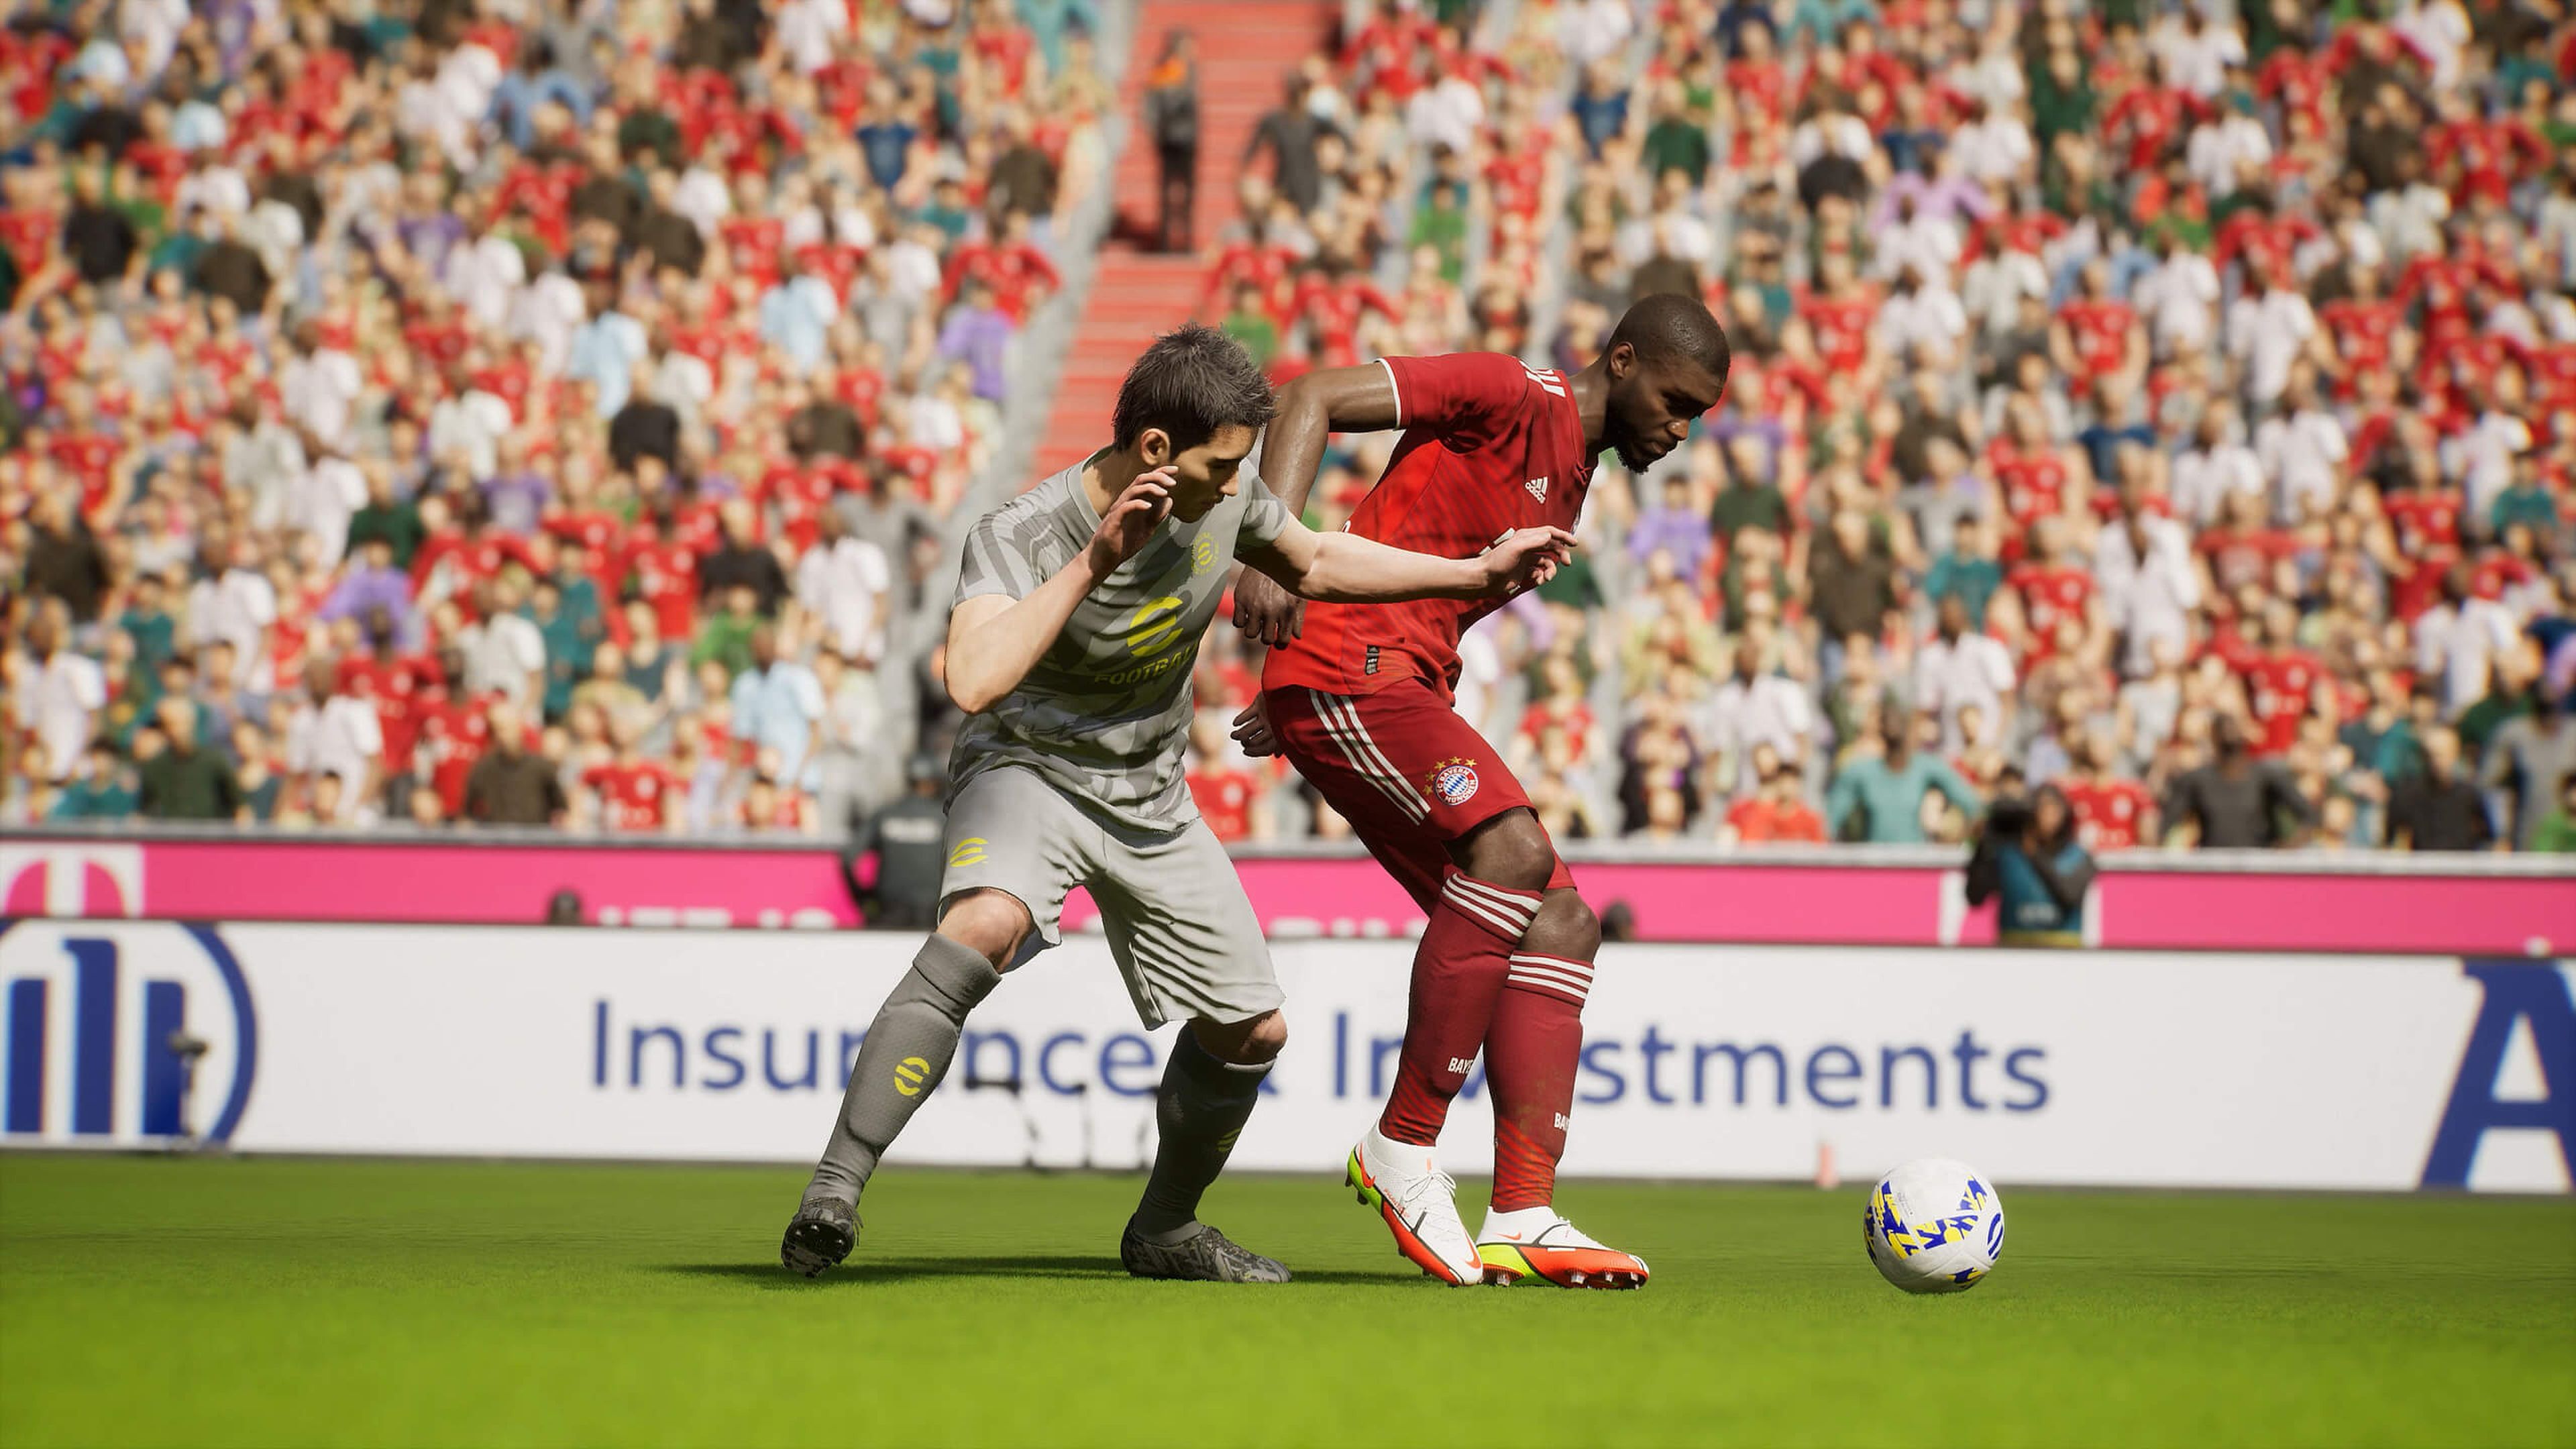 Requisitos FIFA 22 en PC